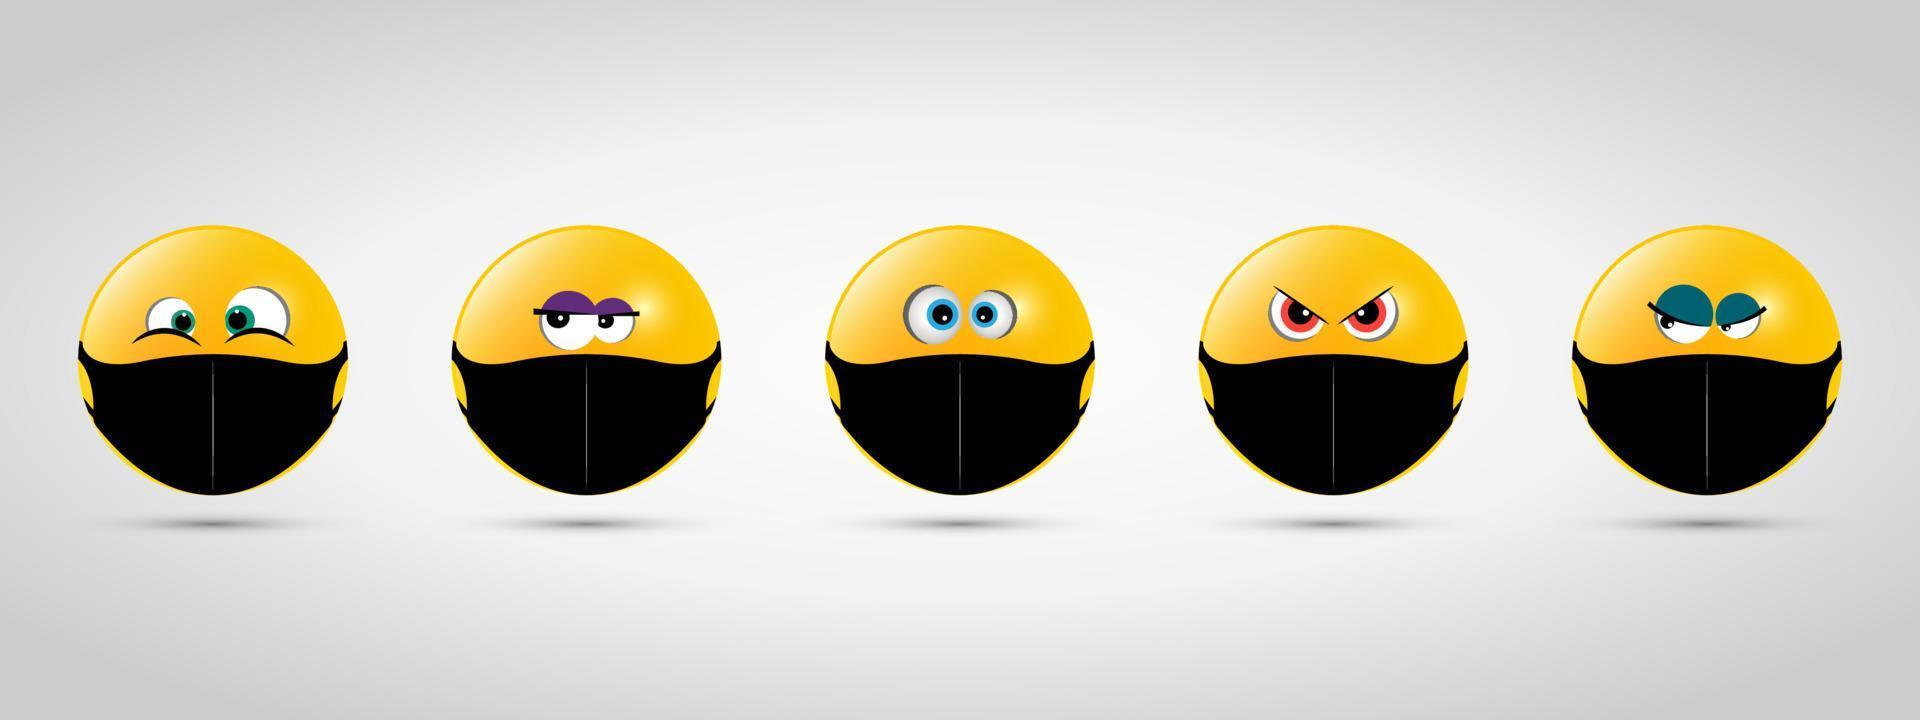 imposta emoji con maschera bocca nera. icona emoji gialla sul modello grigio. illustrazione vettoriale